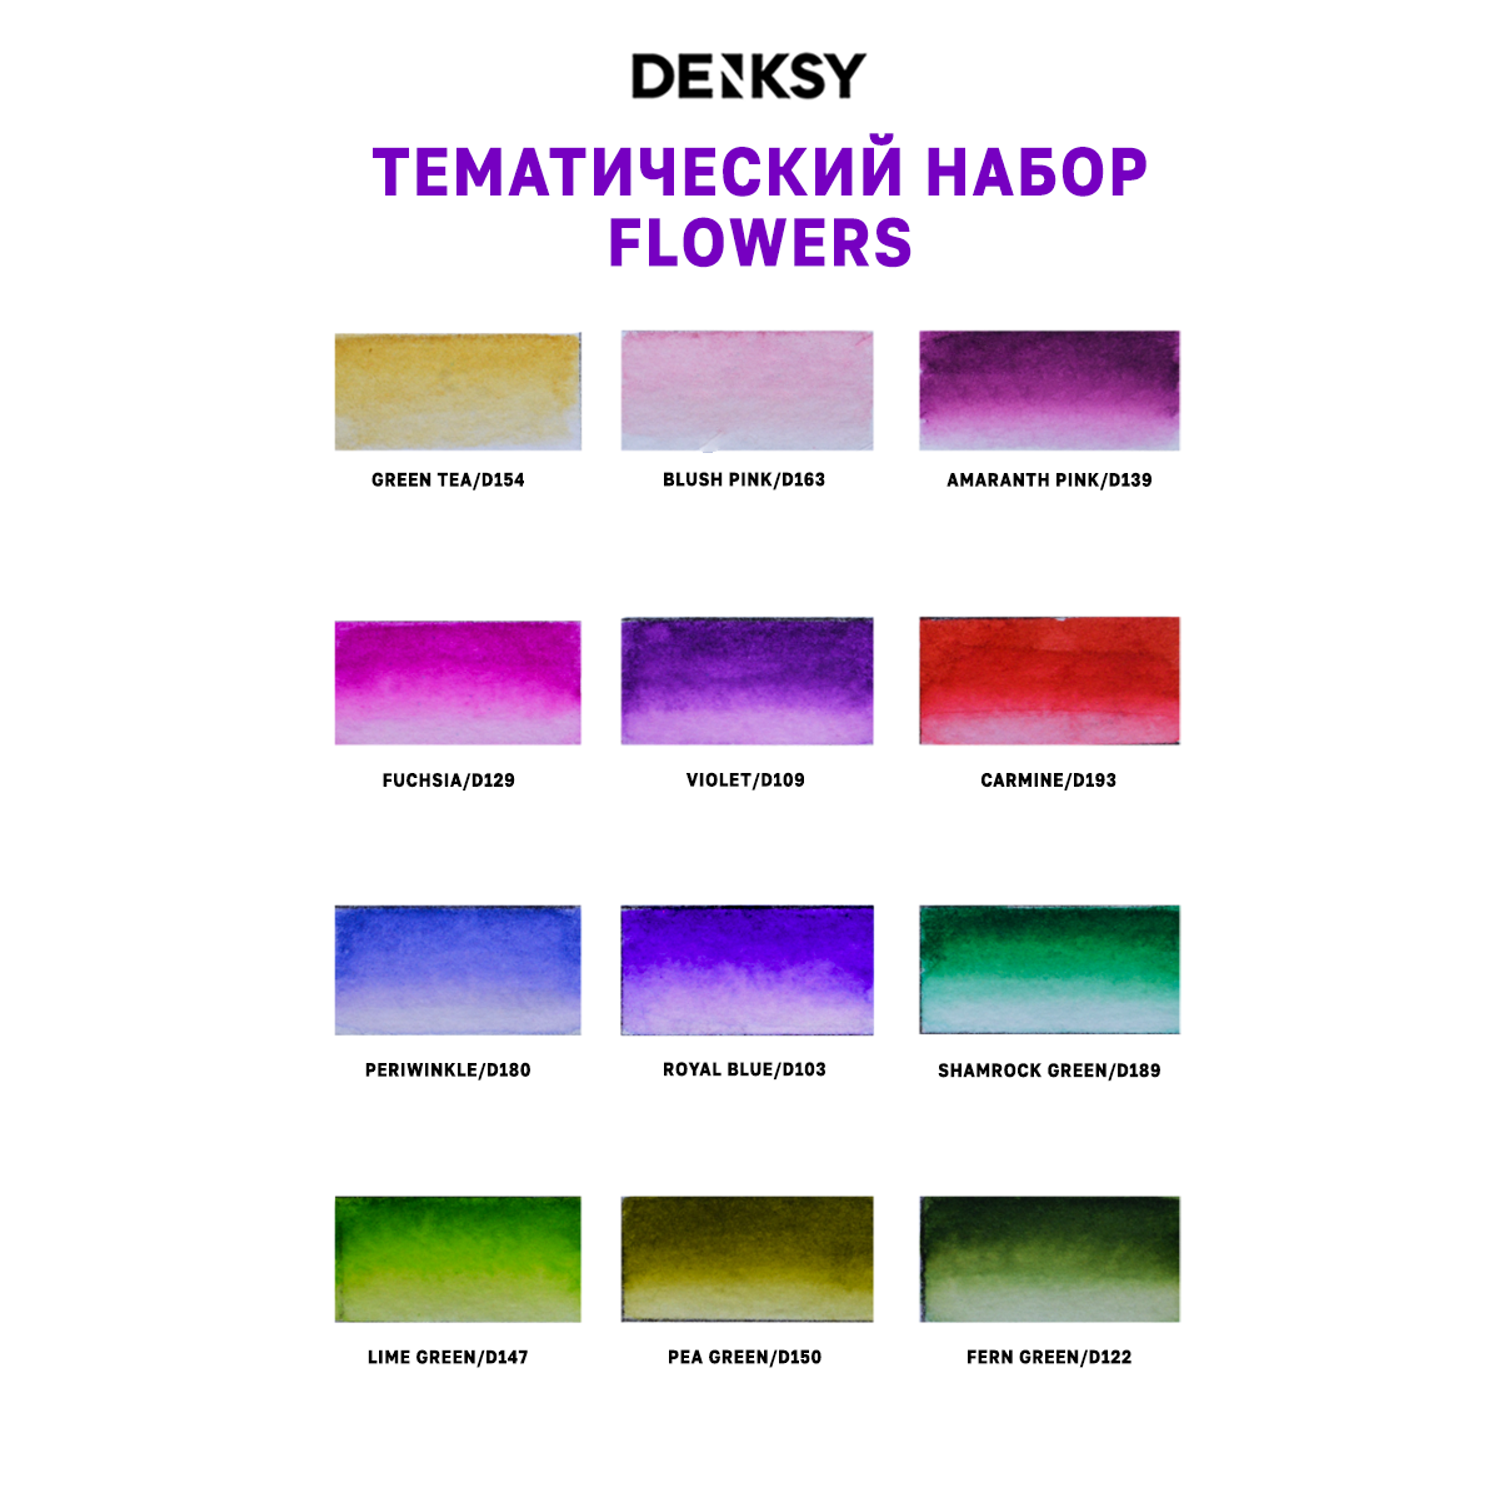 Акварельные маркеры DENKSY 12 Flowers цветов в черном корпусе и 1 кисть с резервуаром - фото 3